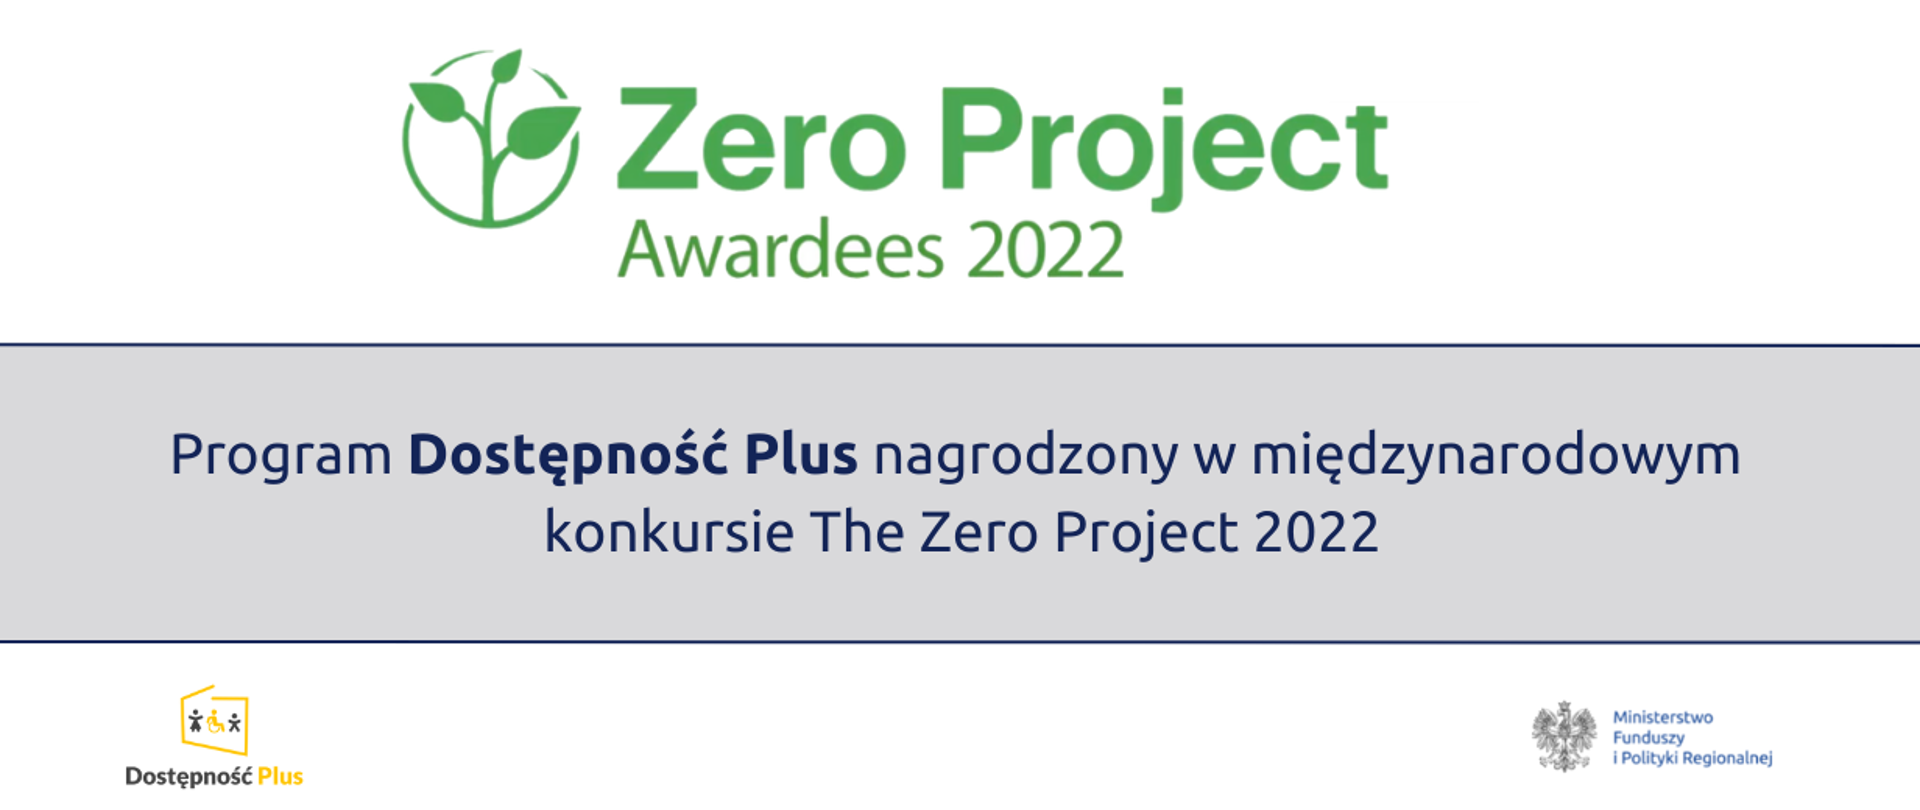 Program Dostępność Plus nagrodzony w międzynarodowym konkursie The Zero Project 2022. Poniżej logo Programu Dostępność Plus oraz MFiPR.